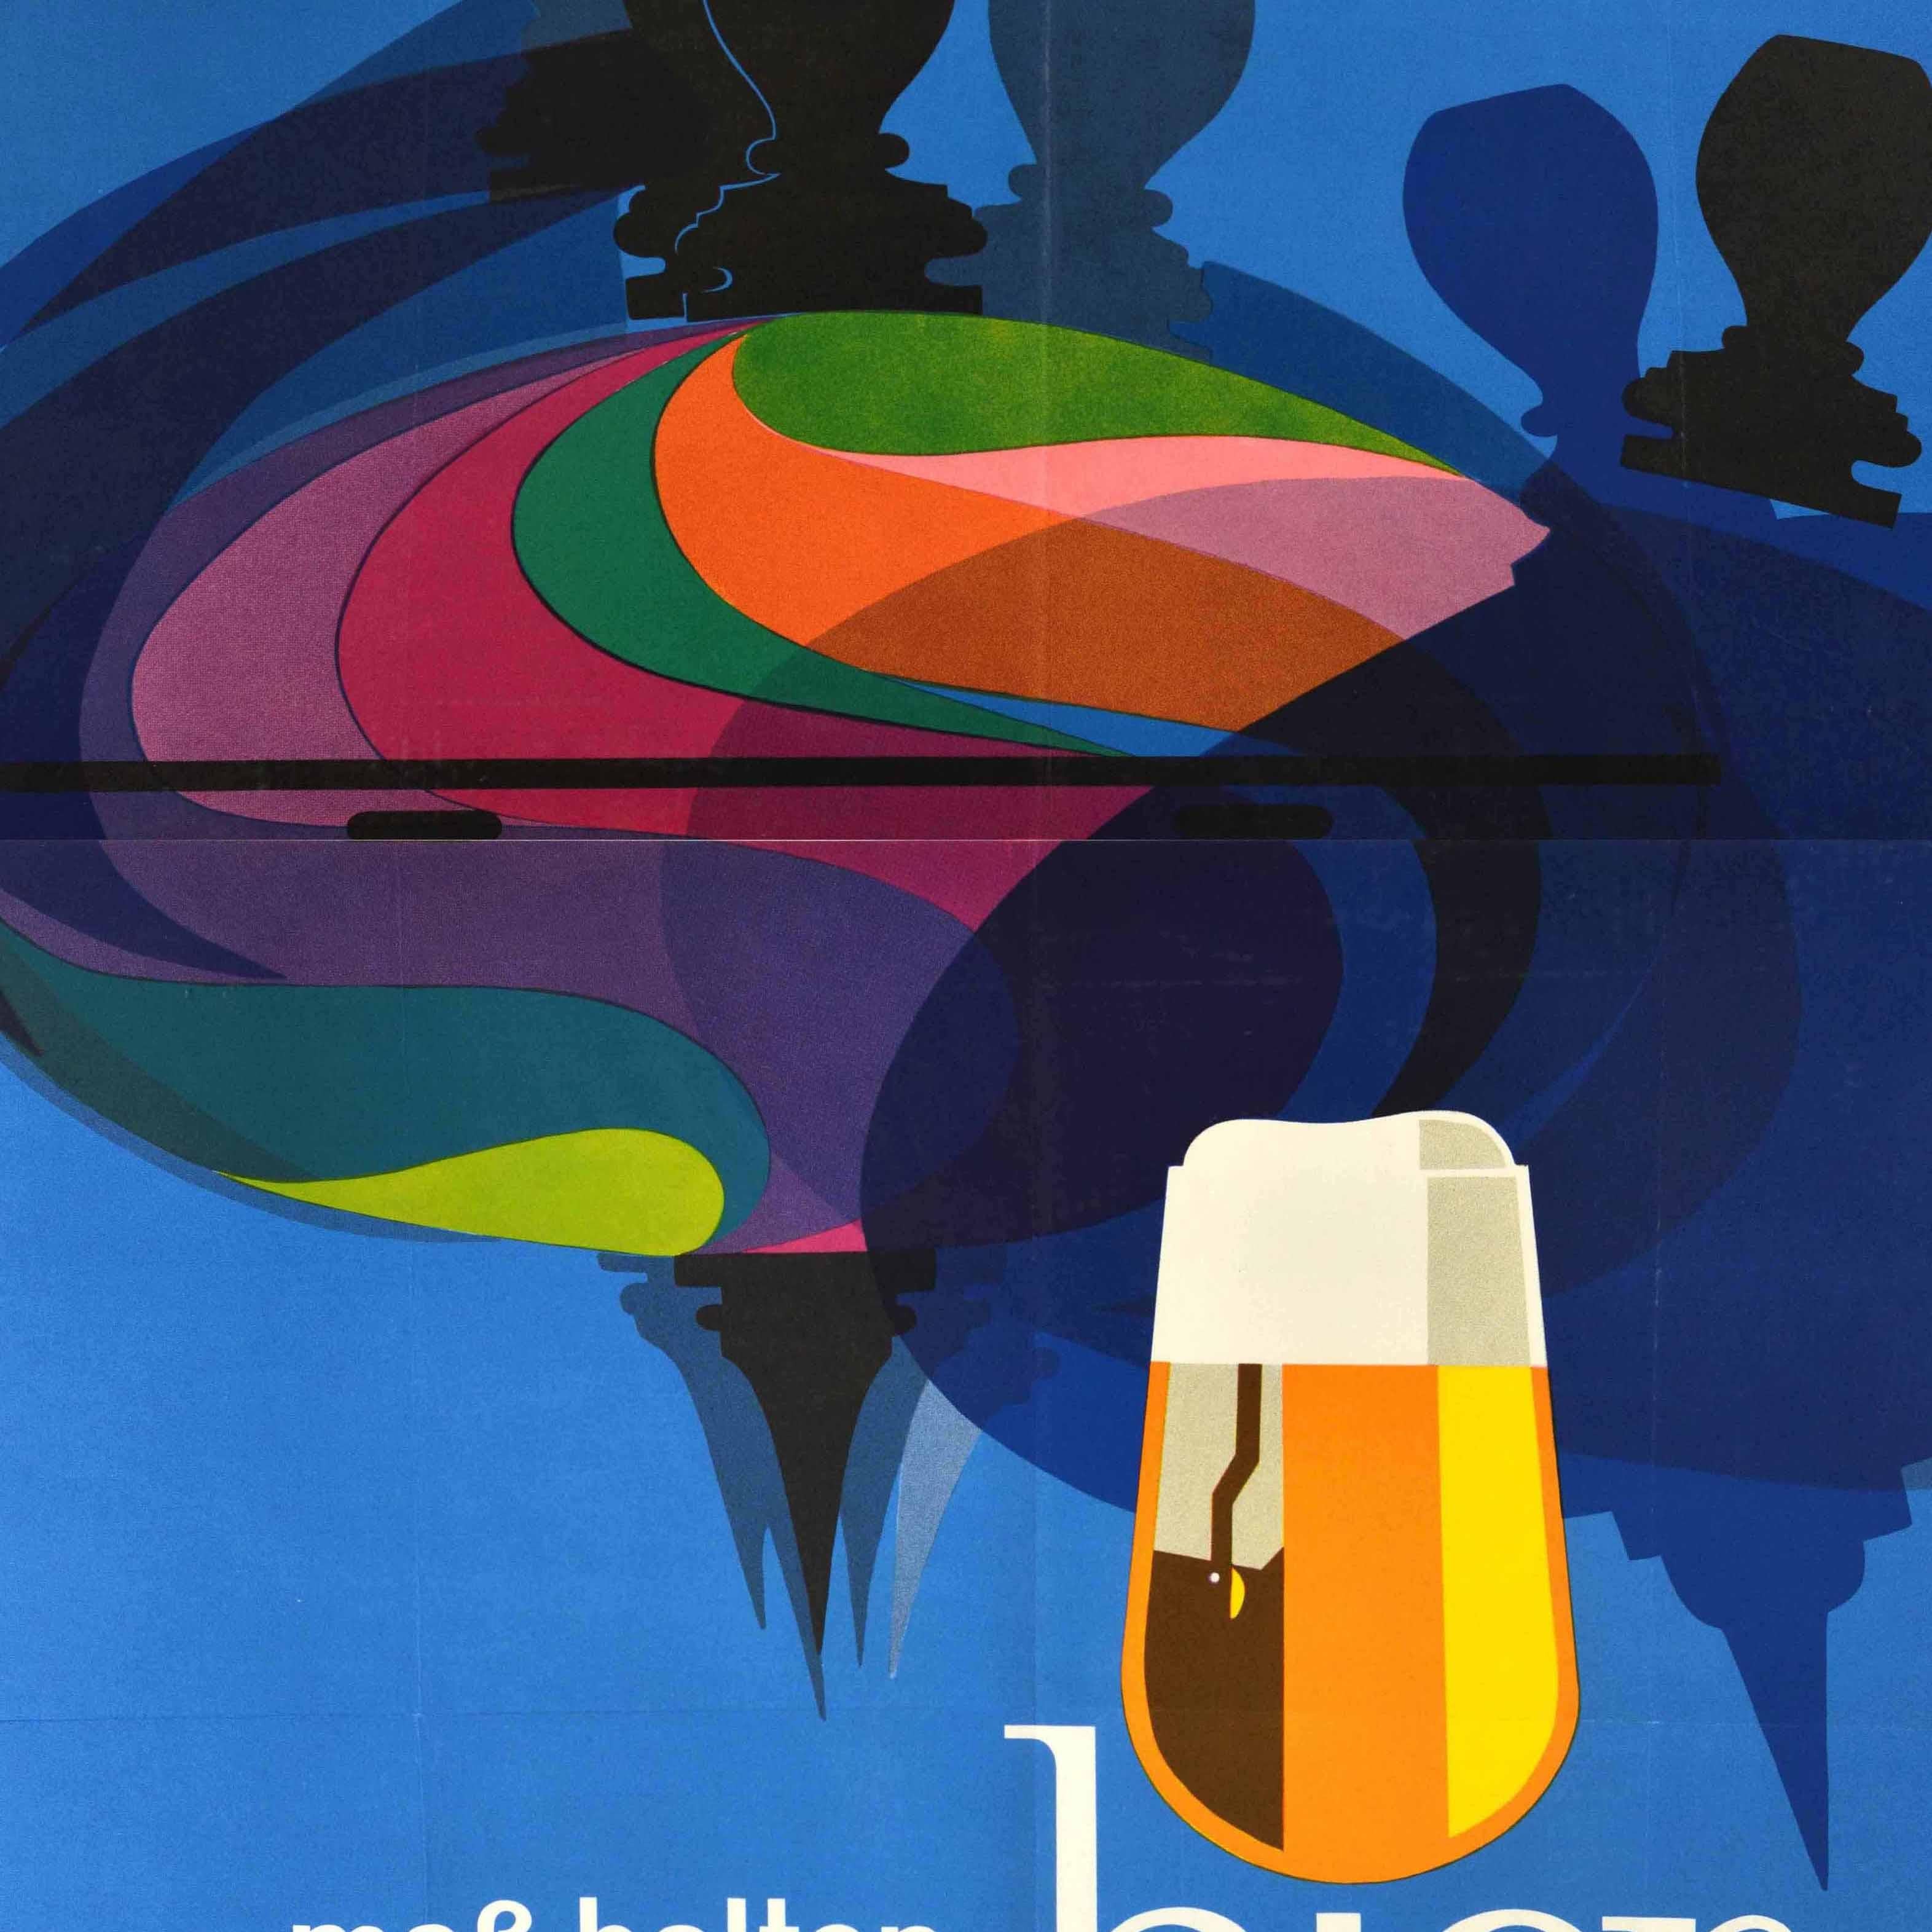 Affiche publicitaire vintage originale - Mass halten bier trinken / Drink beer moderately - présentant un superbe dessin représentant un jouet toupie coloré et les ombres sur un fond bleu, le texte du titre et un verre à bière dans le cadre du i in